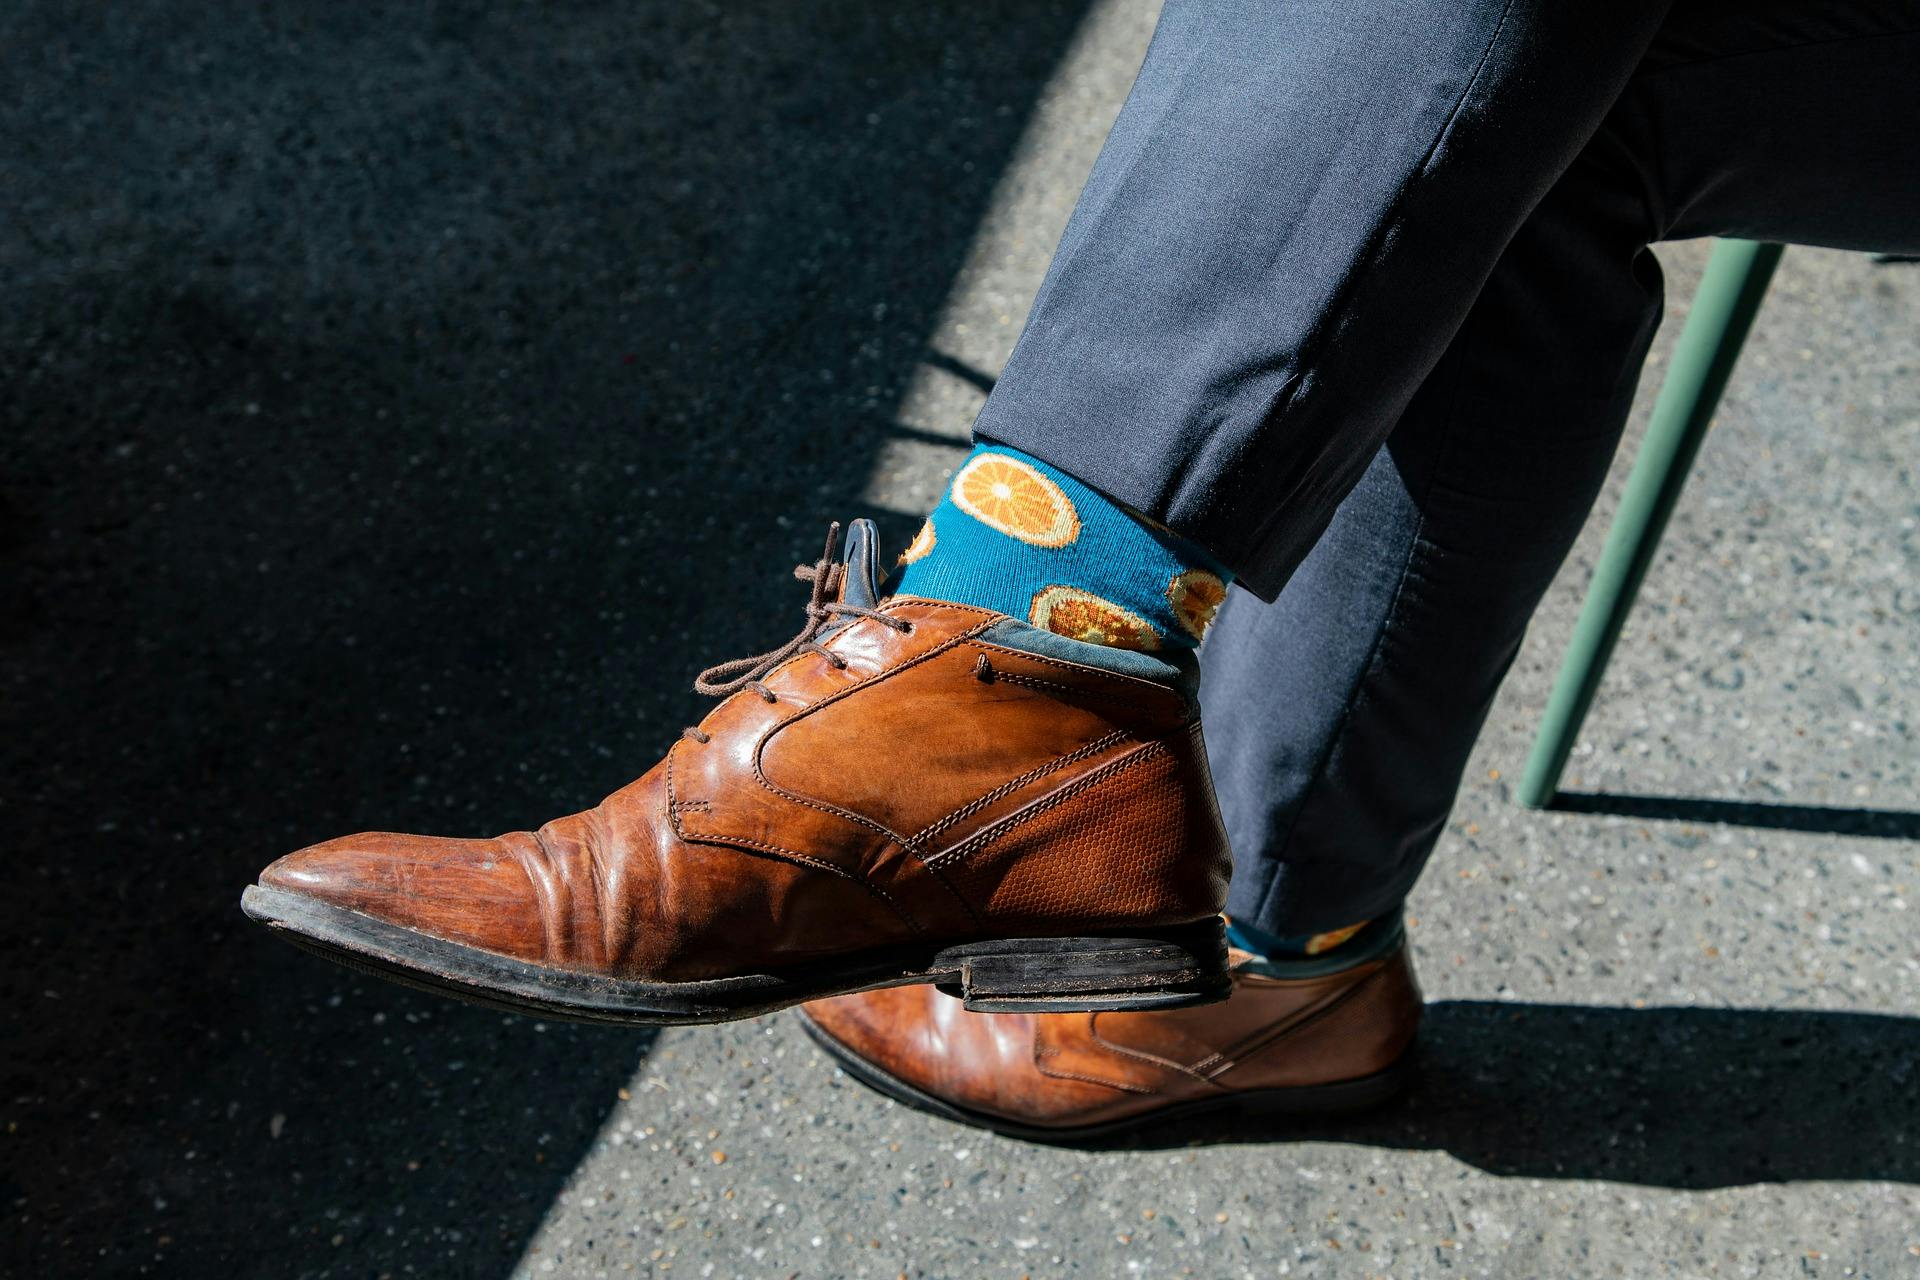 Men's business socks